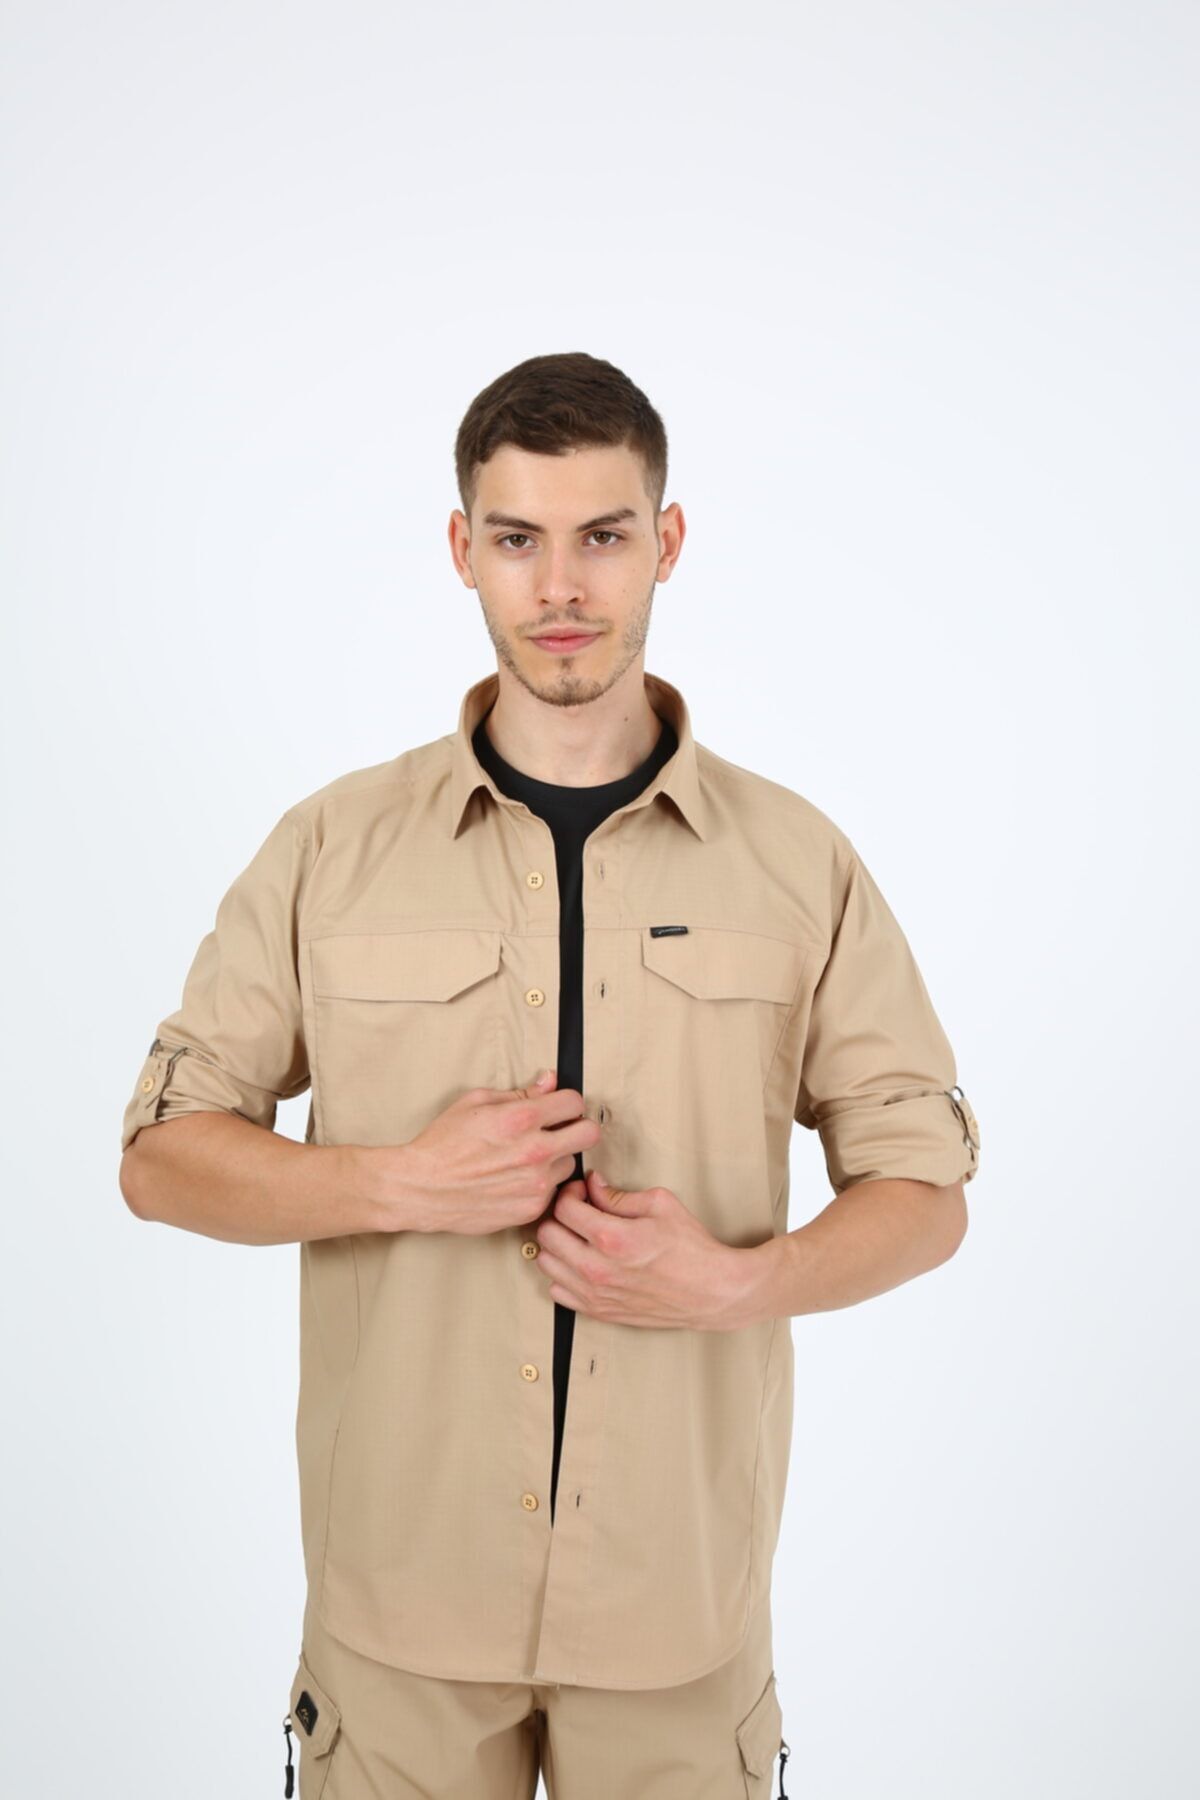 ModaCanel Monel Outdoor Bej Tactical Gömlek Taktik Giyim Ripstop Gömlek